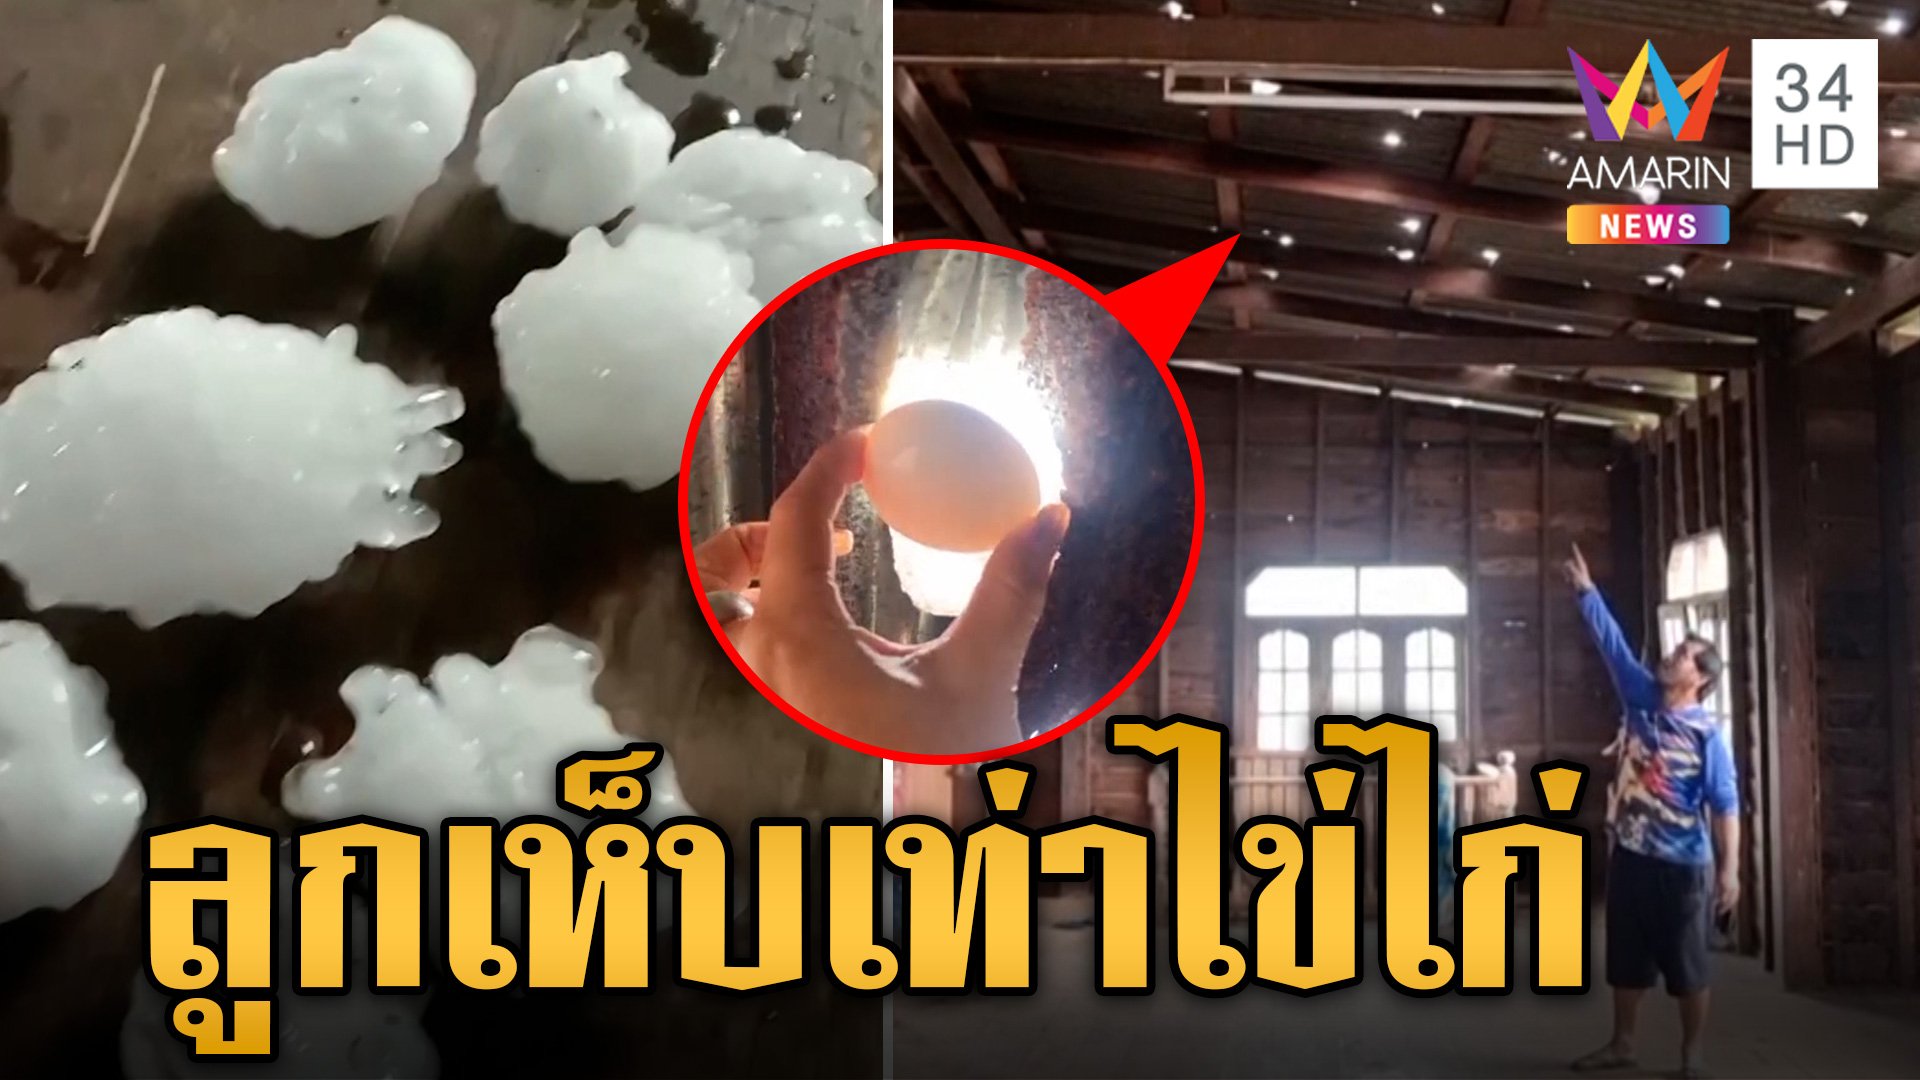 พายุฤดูร้อนถล่มไทย ตะลึง! ลูกเห็บเท่าไข่ไก่ตกใส่หลังคาบ้านจนทะลุ | ทุบโต๊ะข่าว | 29 มี.ค. 67 | AMARIN TVHD34